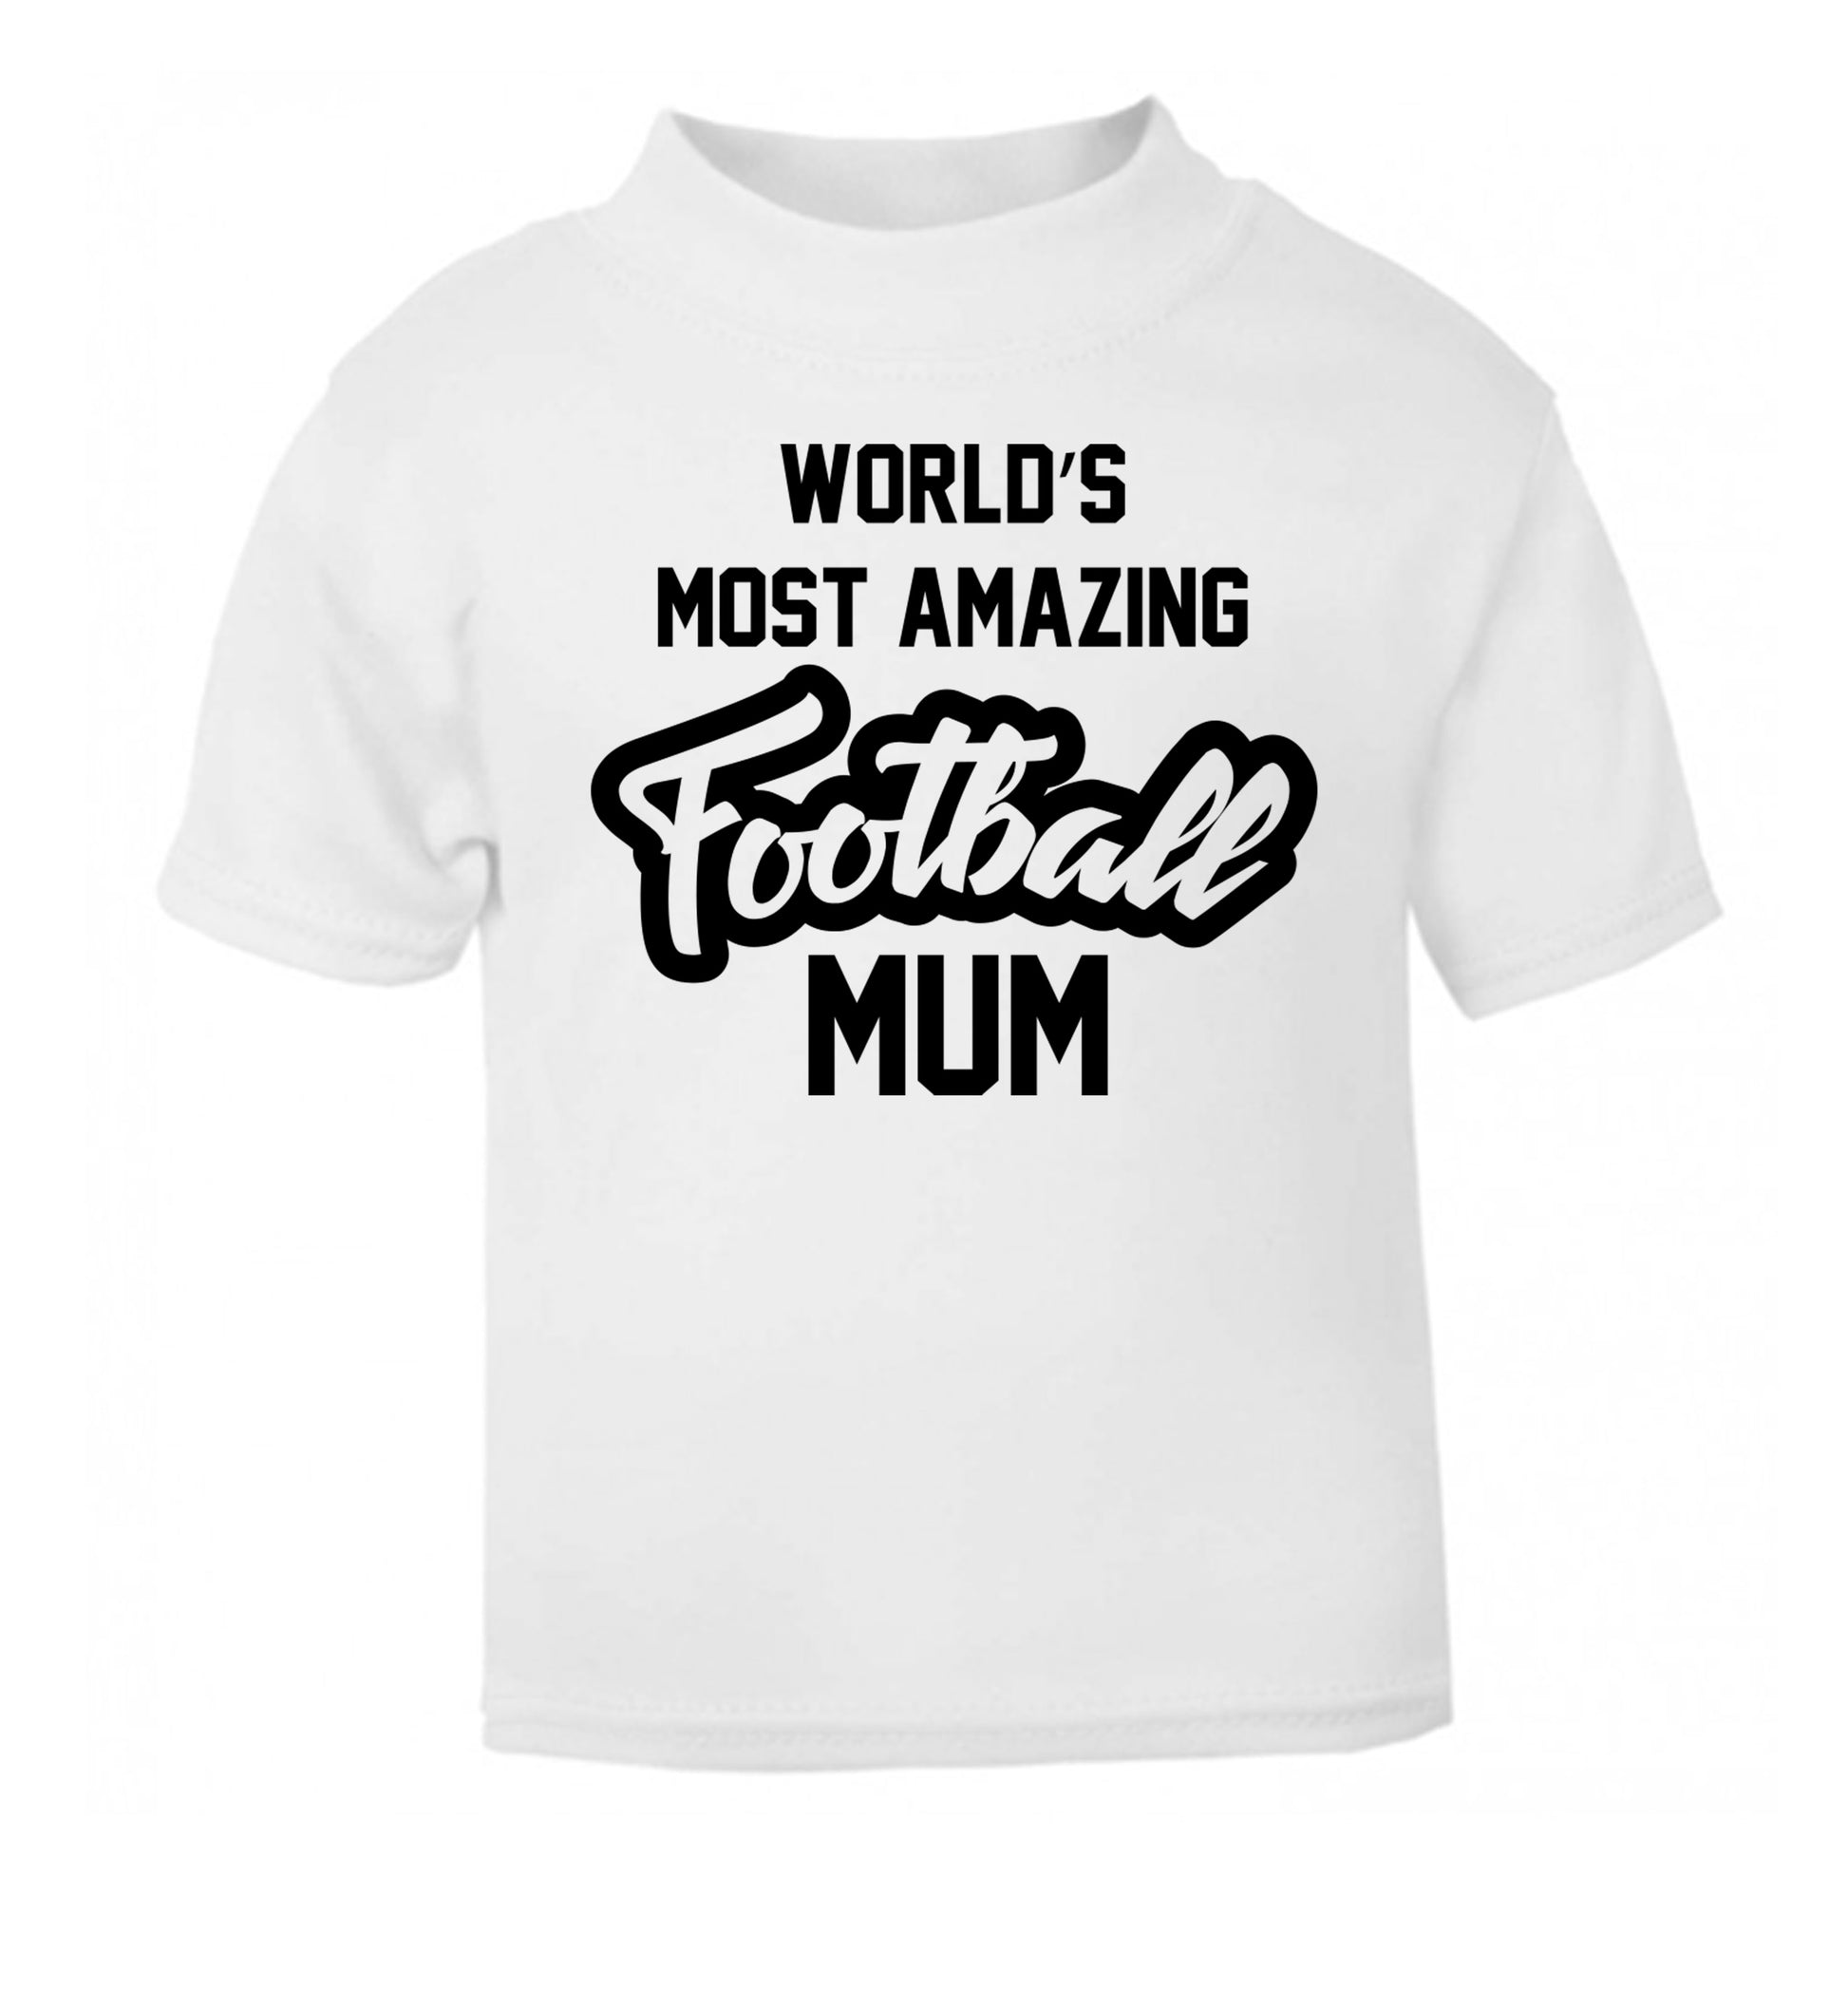 Worlds most amazing football mum white Baby Toddler Tshirt 2 Years